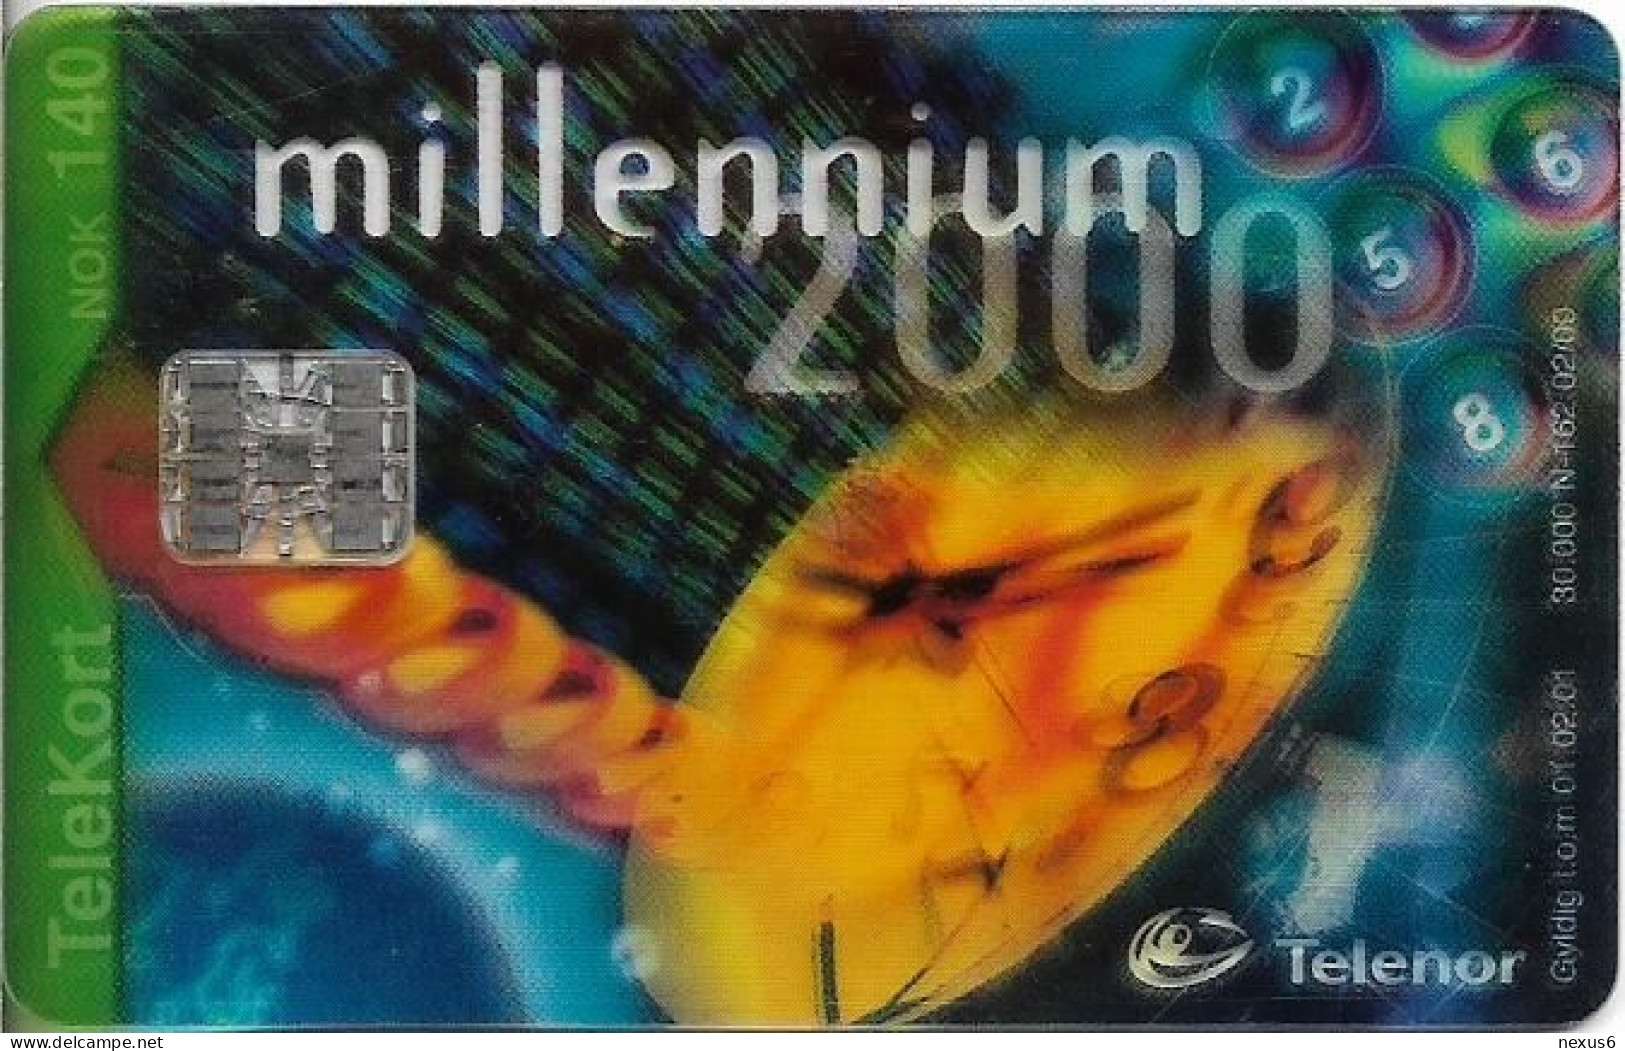 Norway - Telenor - Millennium 2000 (Transparent Card) - N-162 - 02.2000, 140U, 30.000ex, Used - Noruega